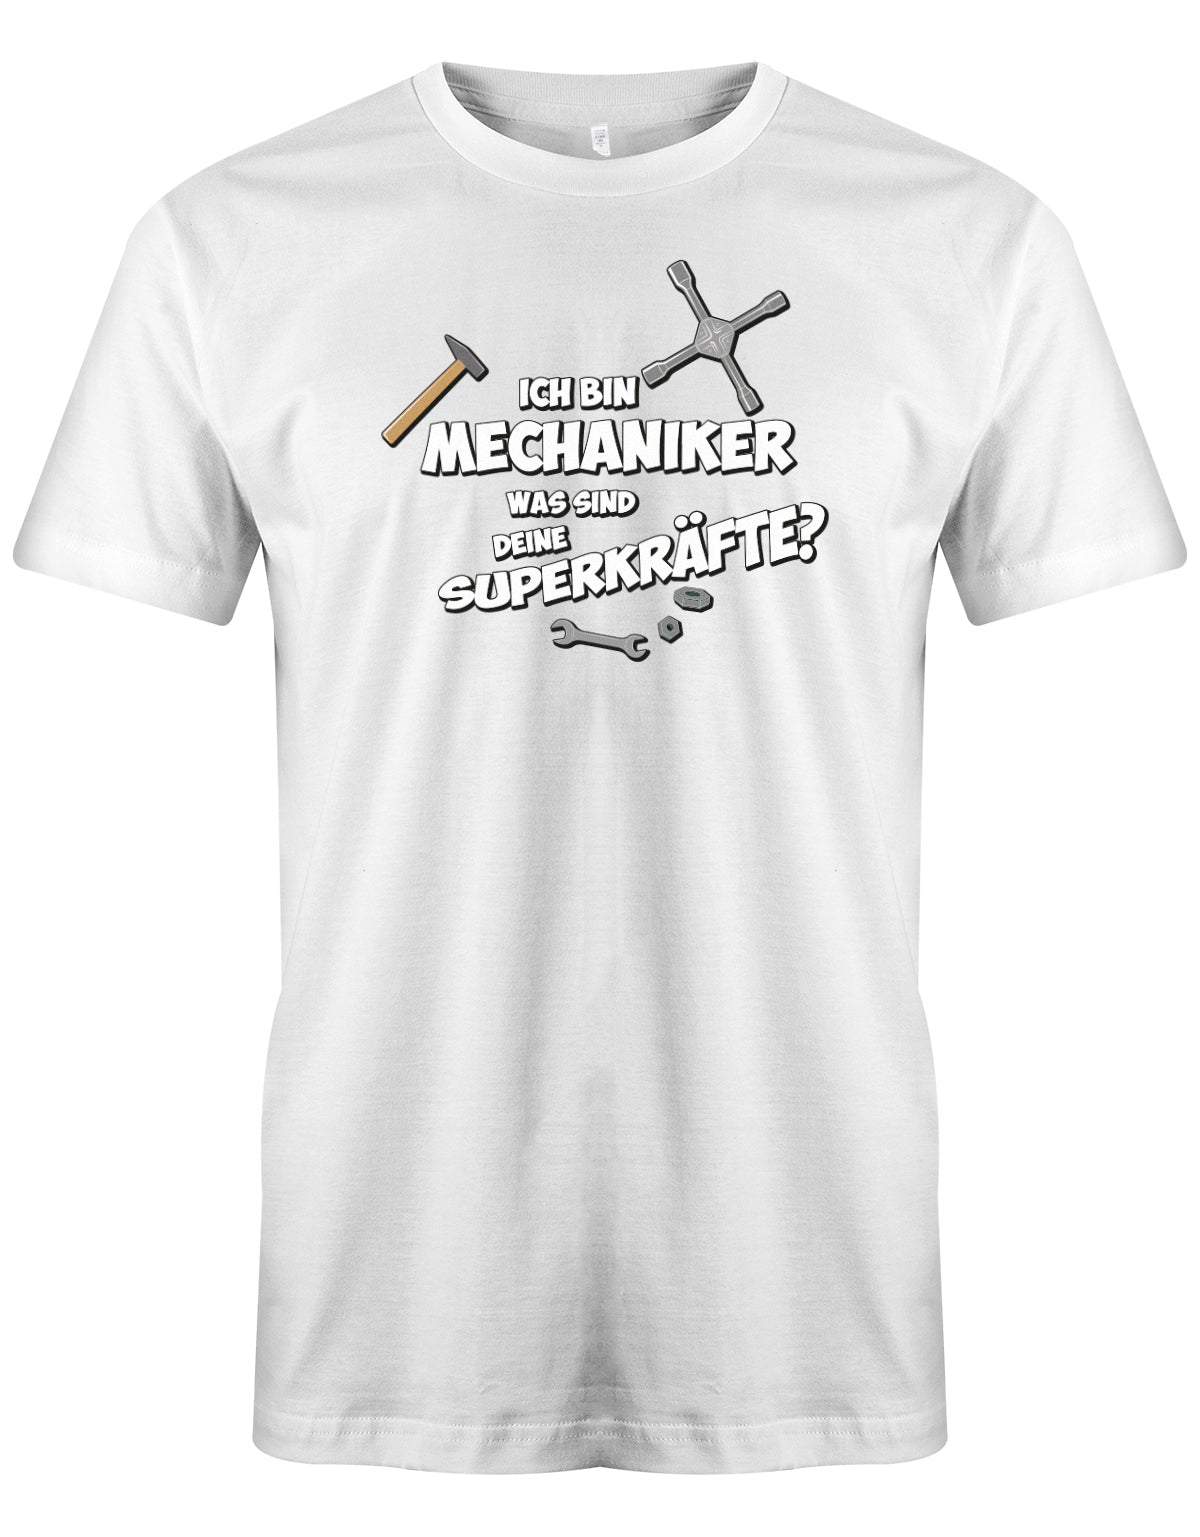 KFZ Mechaniker Shirt - Ich bin Mechaniker was sind deine Superkräfte? Weiss